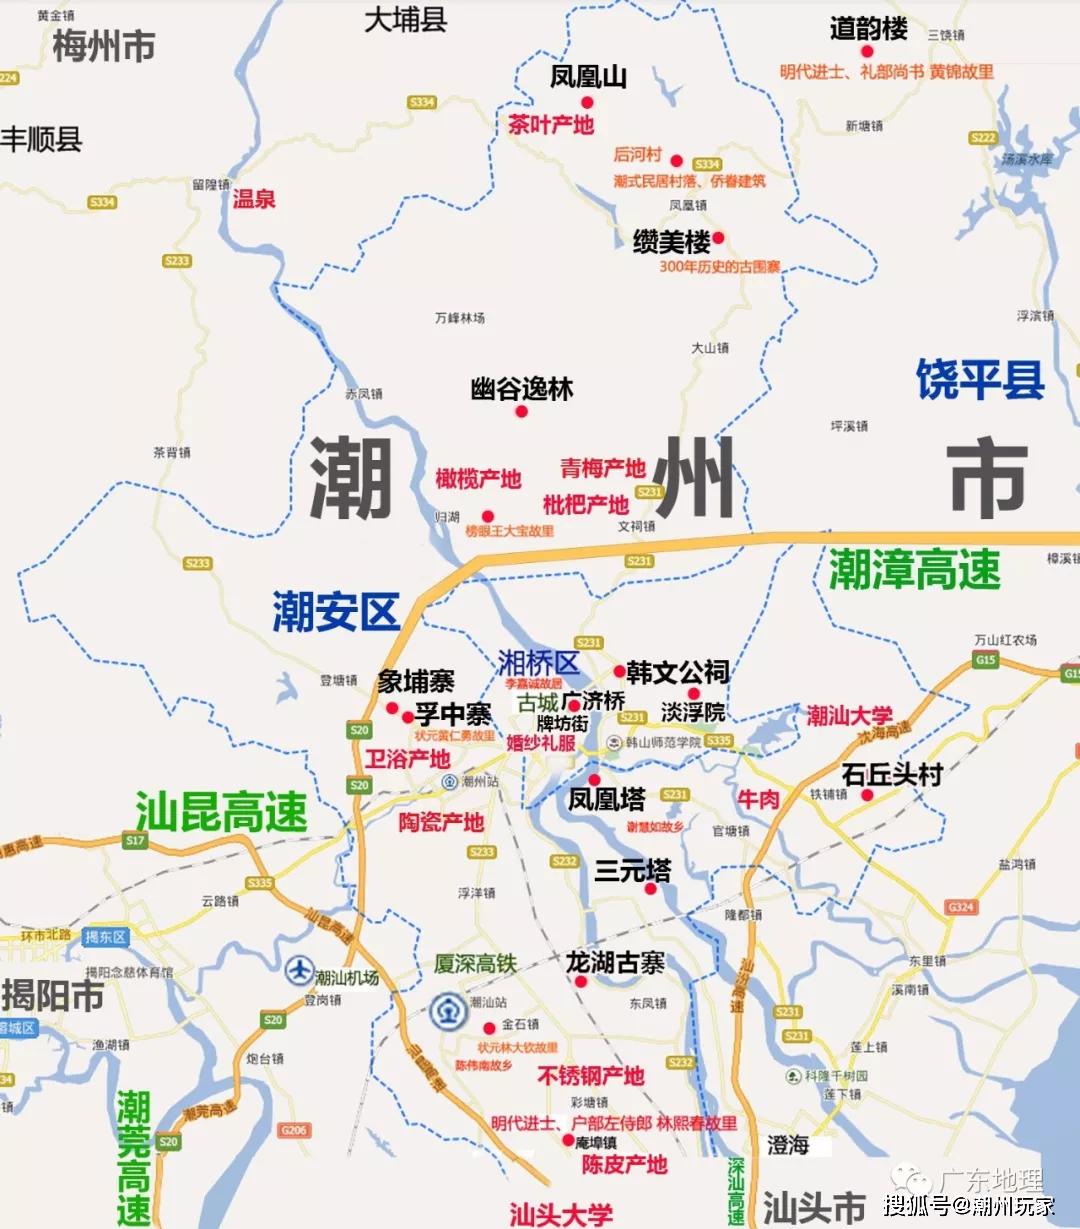 潮州旅游地图潮州民系98个游神赛会15景点